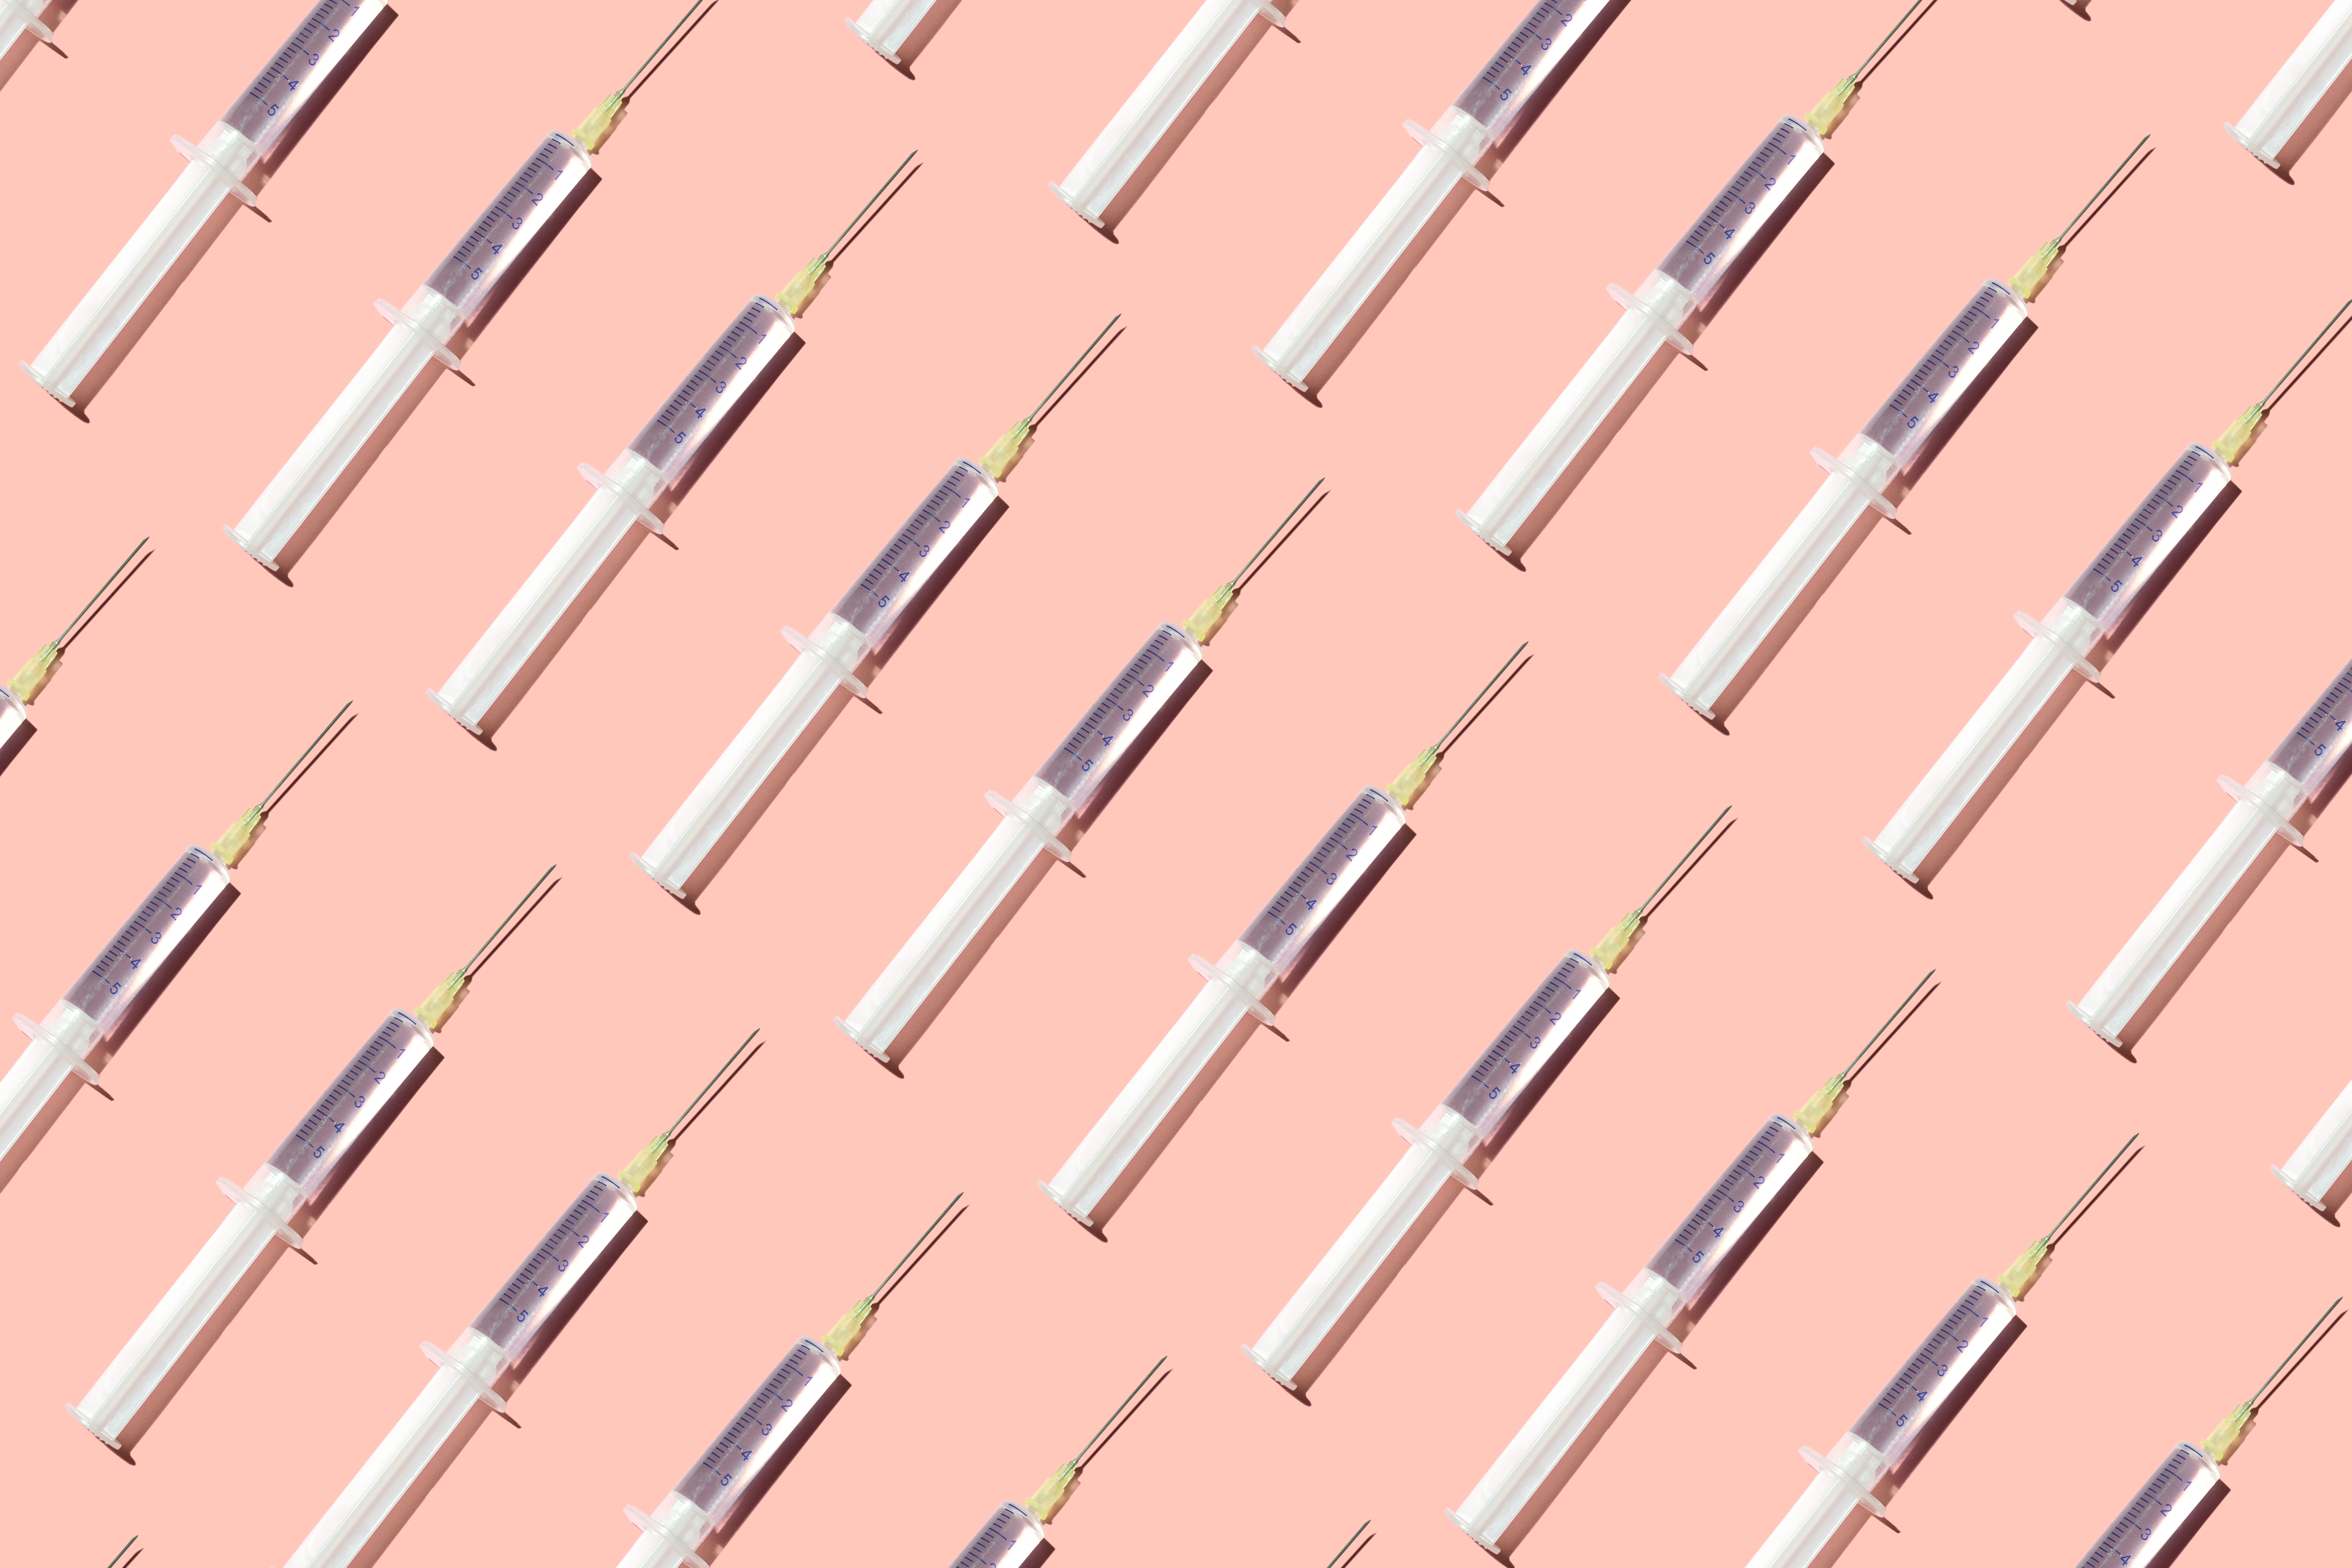 Ilustração de muitas seringas sobre fundo rosa claro.